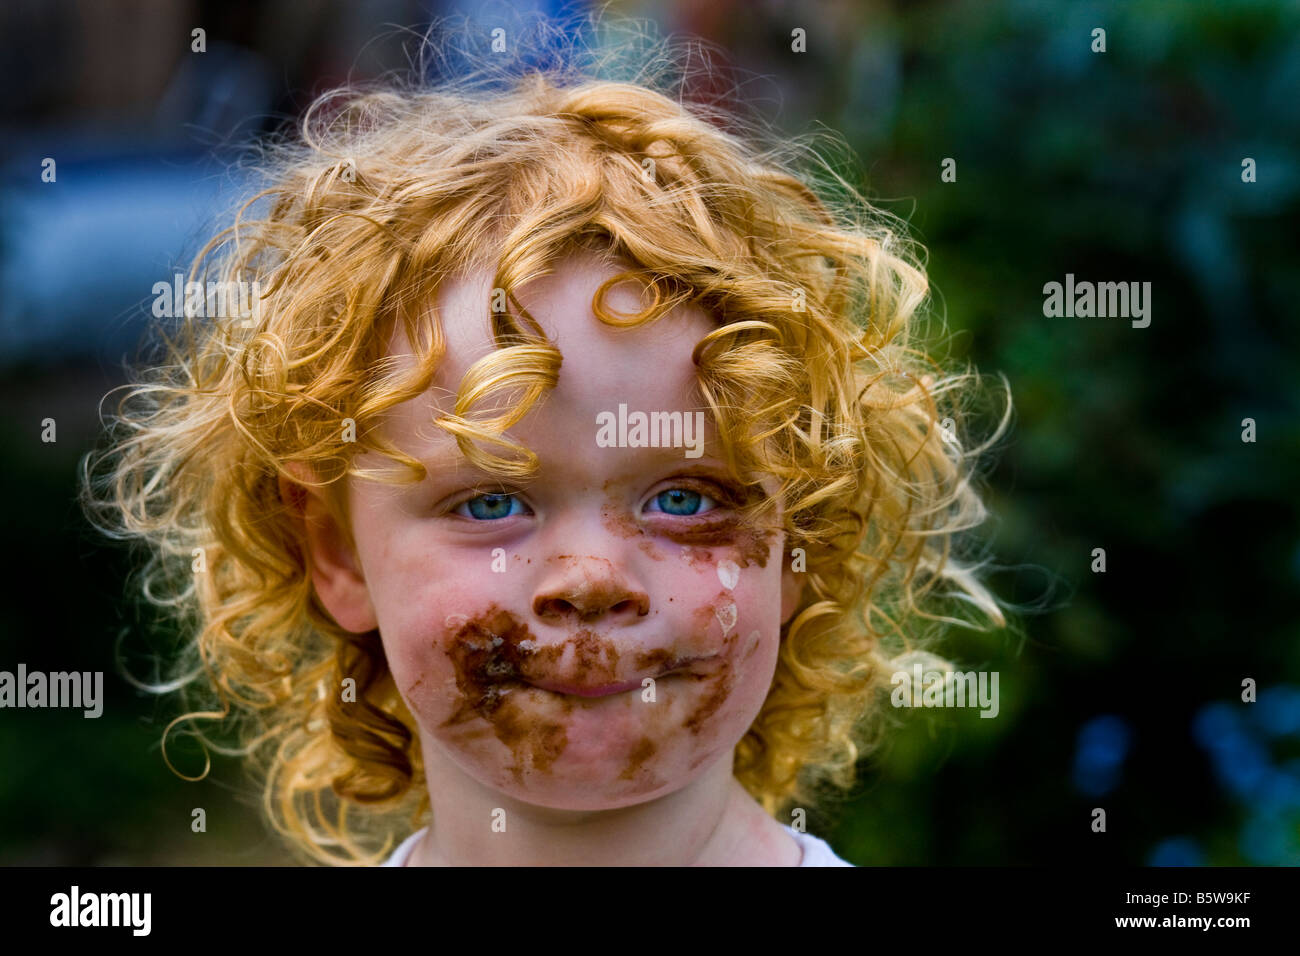 Magnum ice-cream covered child Stock Photo